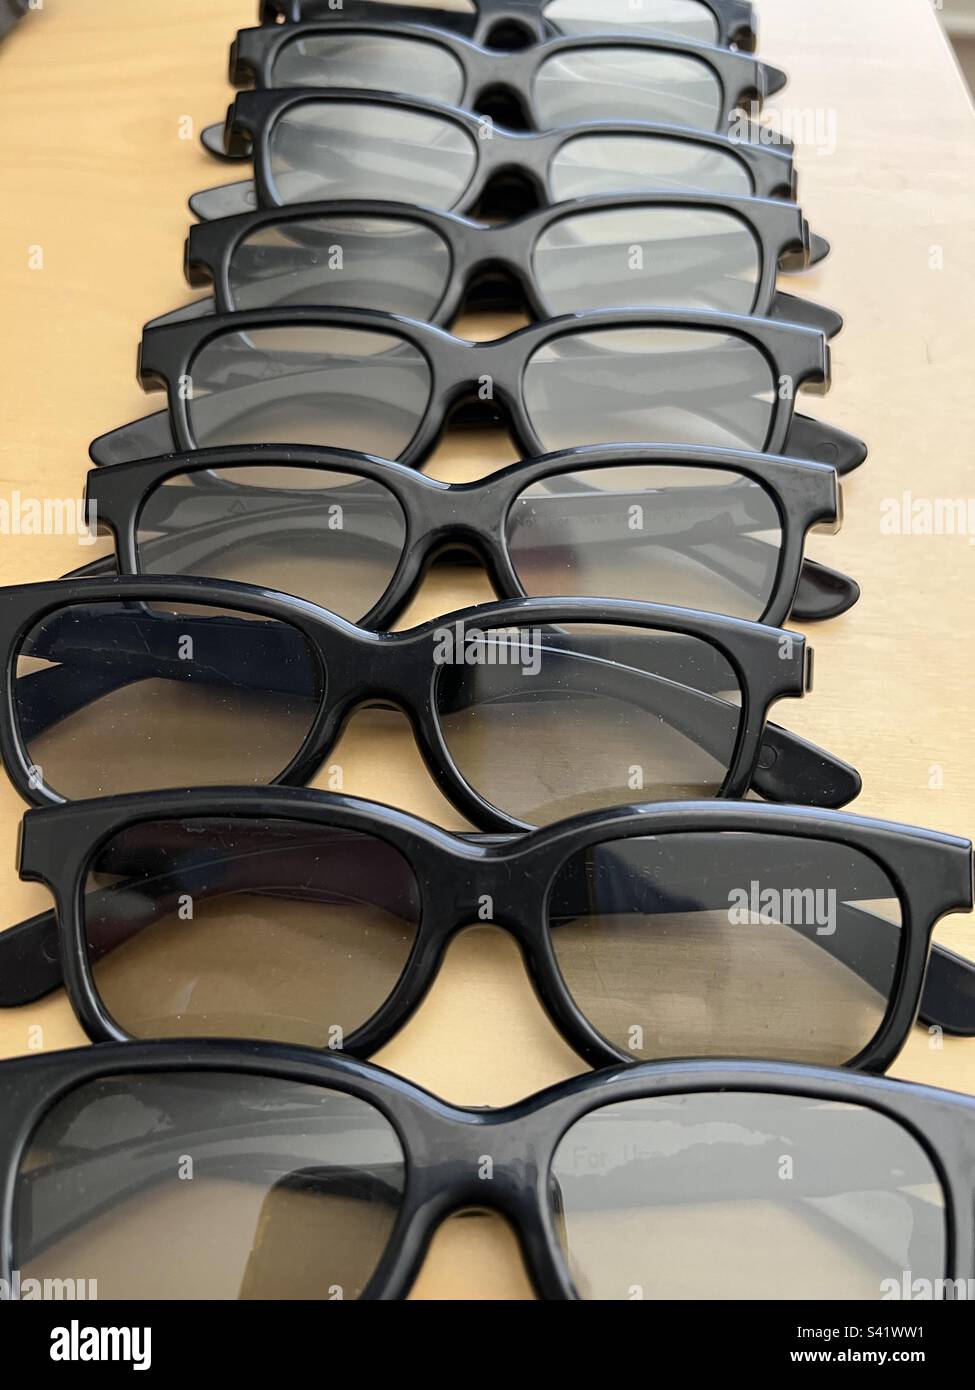 Mehrere schwarze 3D-Brillen aus Kunststoff für Film- oder Fernsehaufnahmen in durchsichtiger Kunststoffverpackung. Keine sichtbaren Logos oder Branding Stockfoto